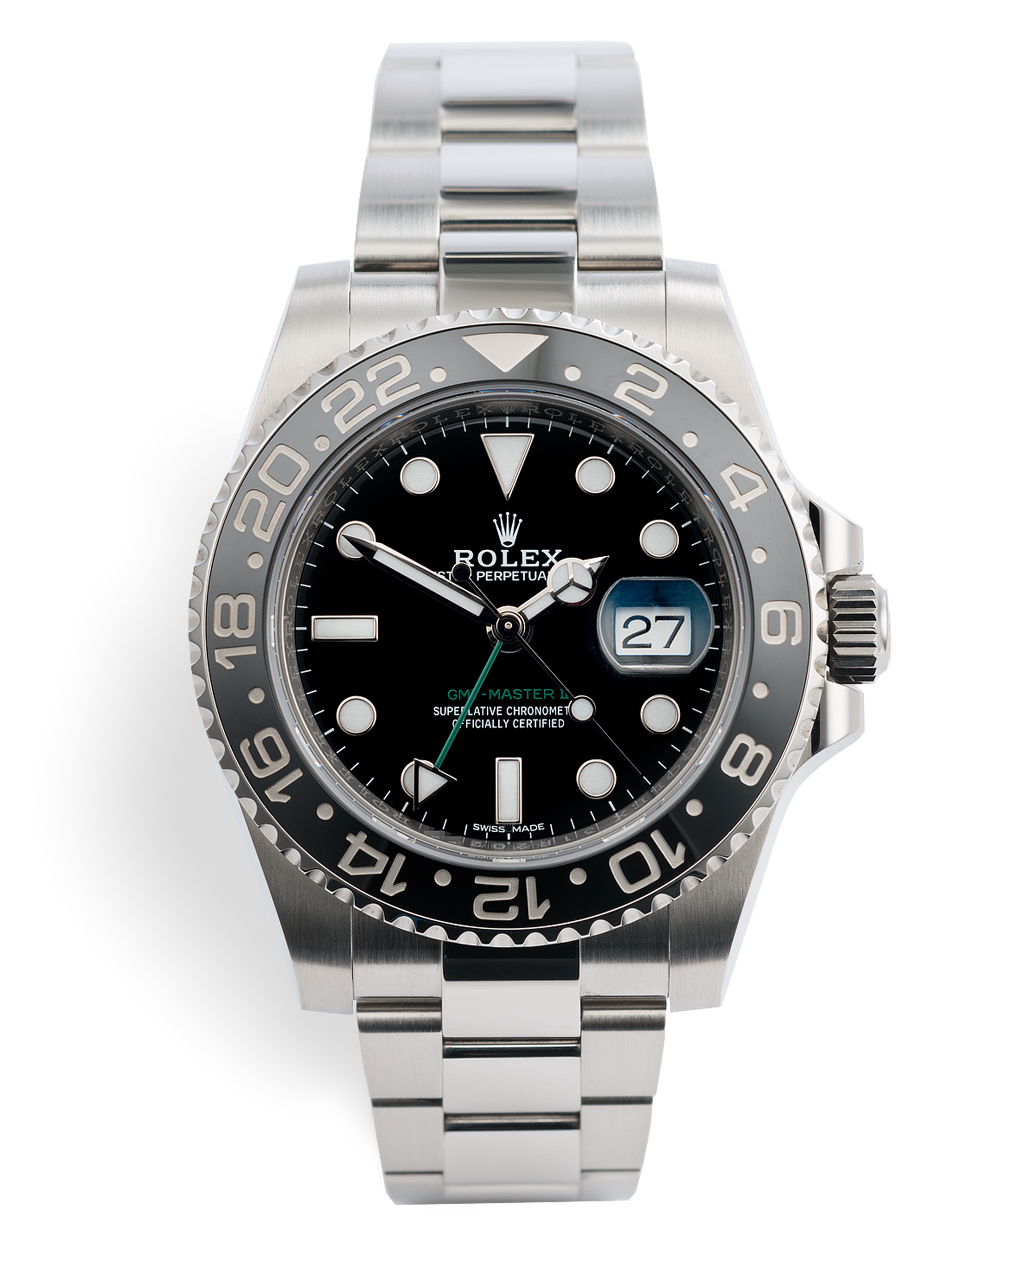 Rolex GMTMaster II Watches ref 116710LN Rolex Warranty to 2023